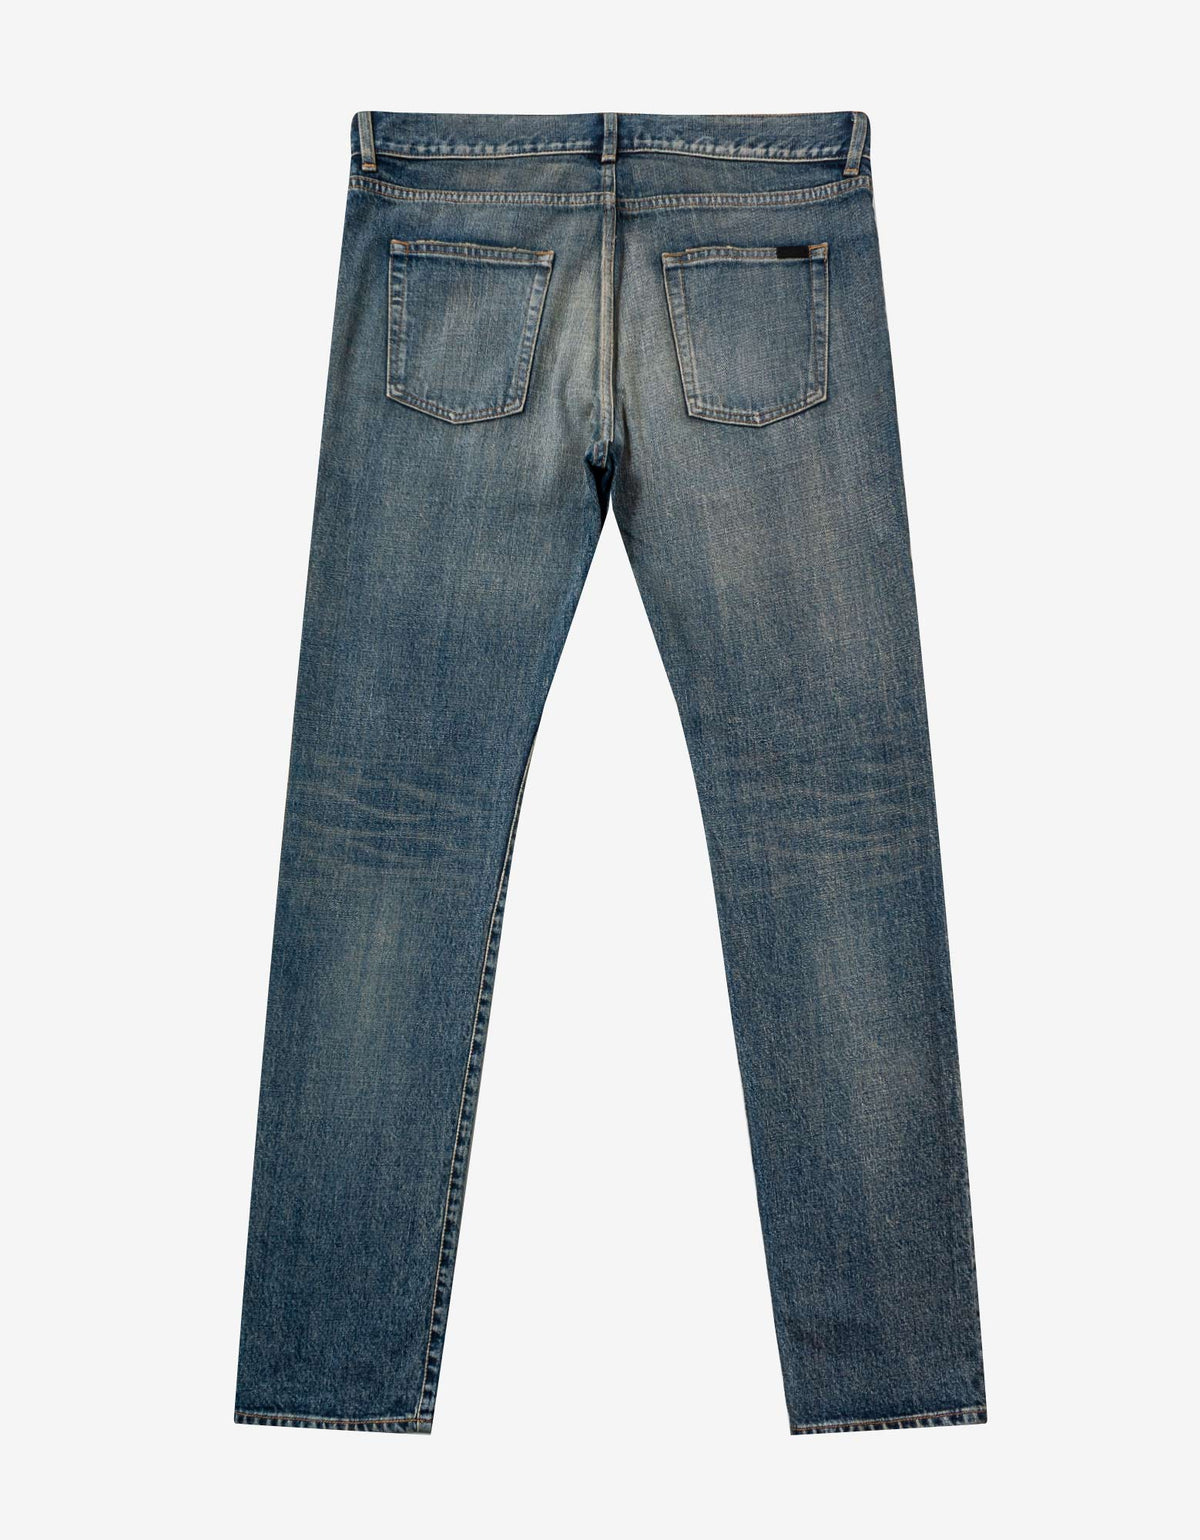 Saint Laurent Dirty Sandy Blue Slim Fit Jeans